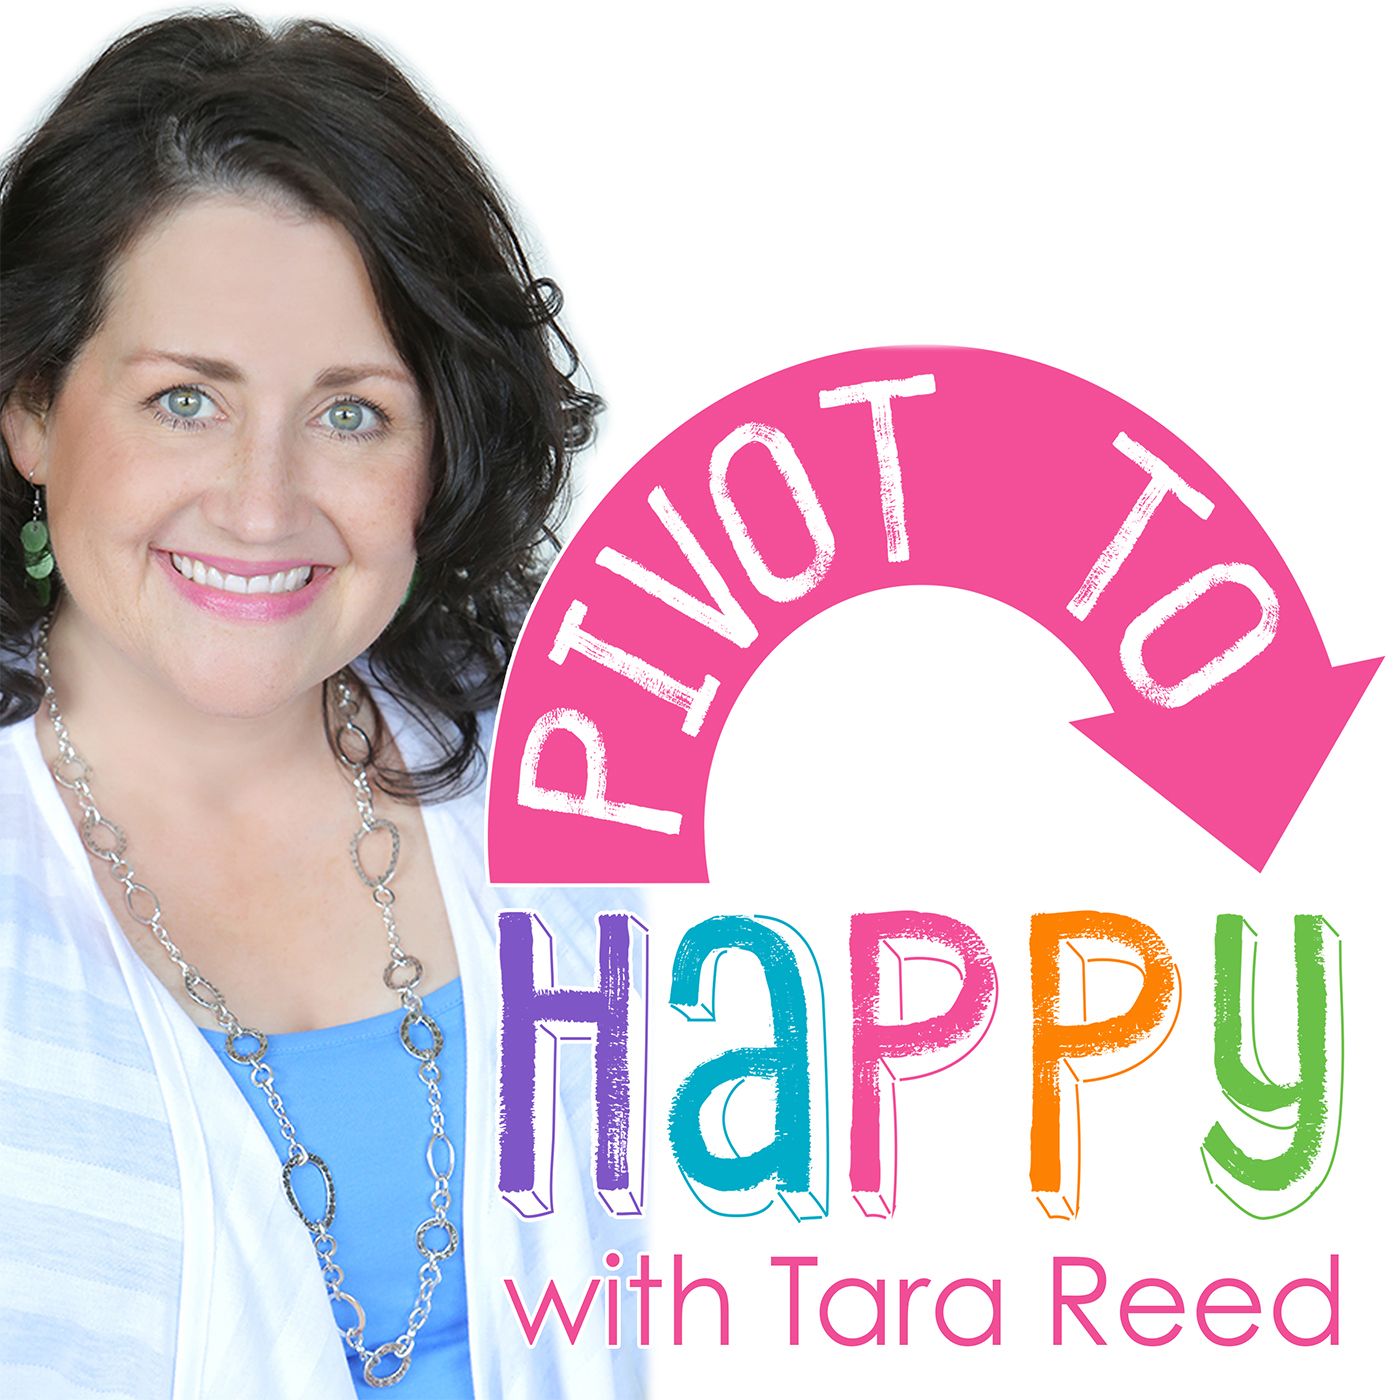 PIVOT TO HAPPY with Tara Reed's tracks